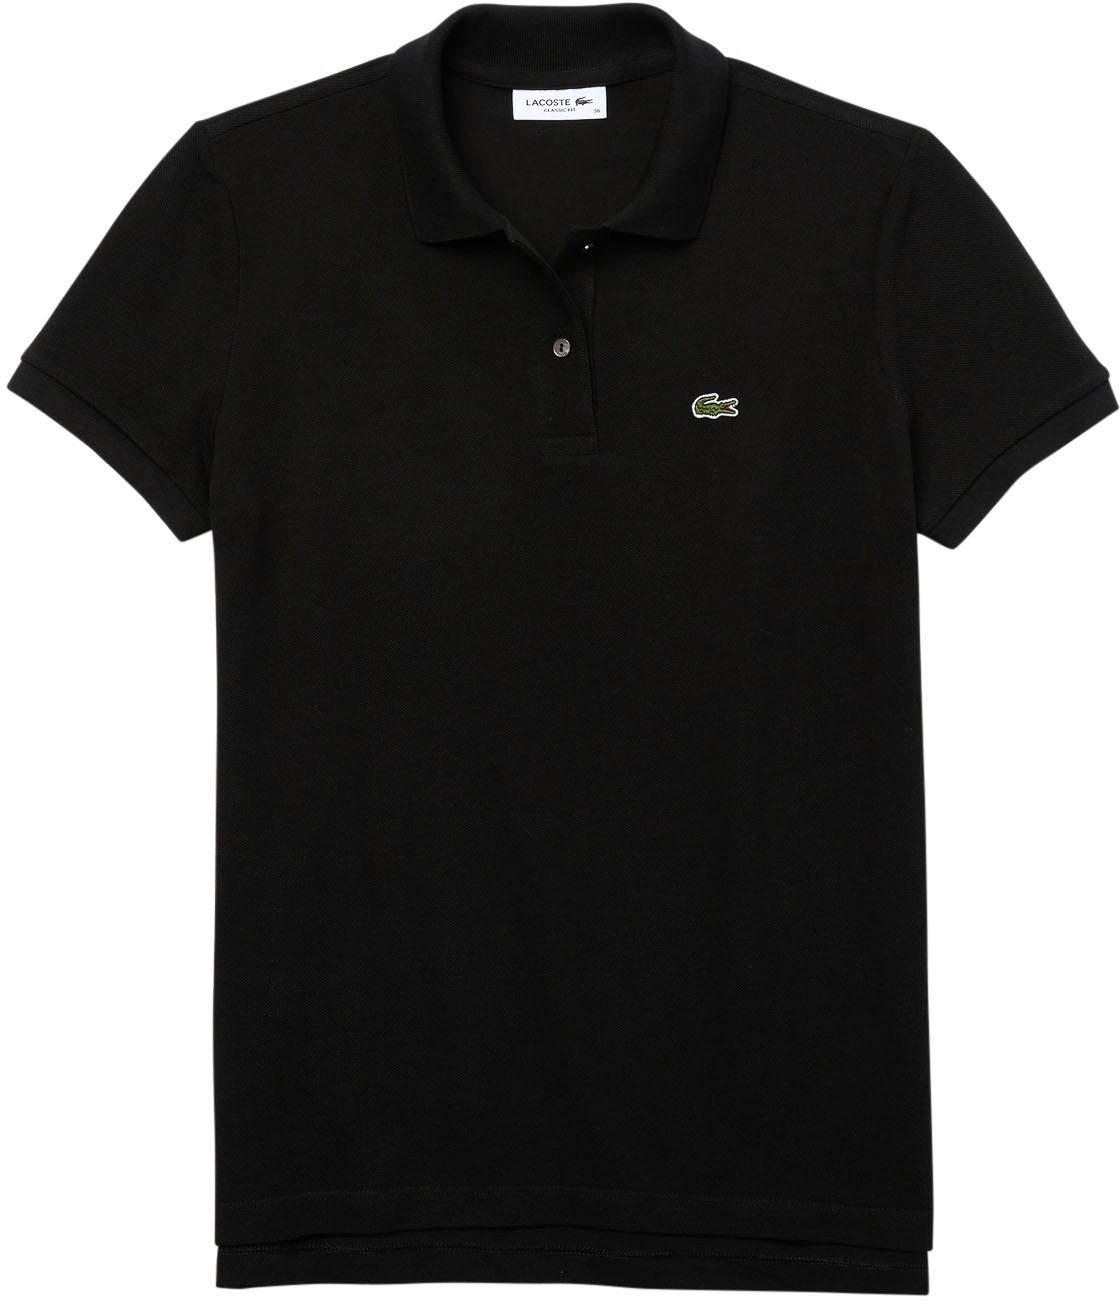 Lacoste Poloshirt mit Lacoste-Logo-Patch auf der Brust schwarz